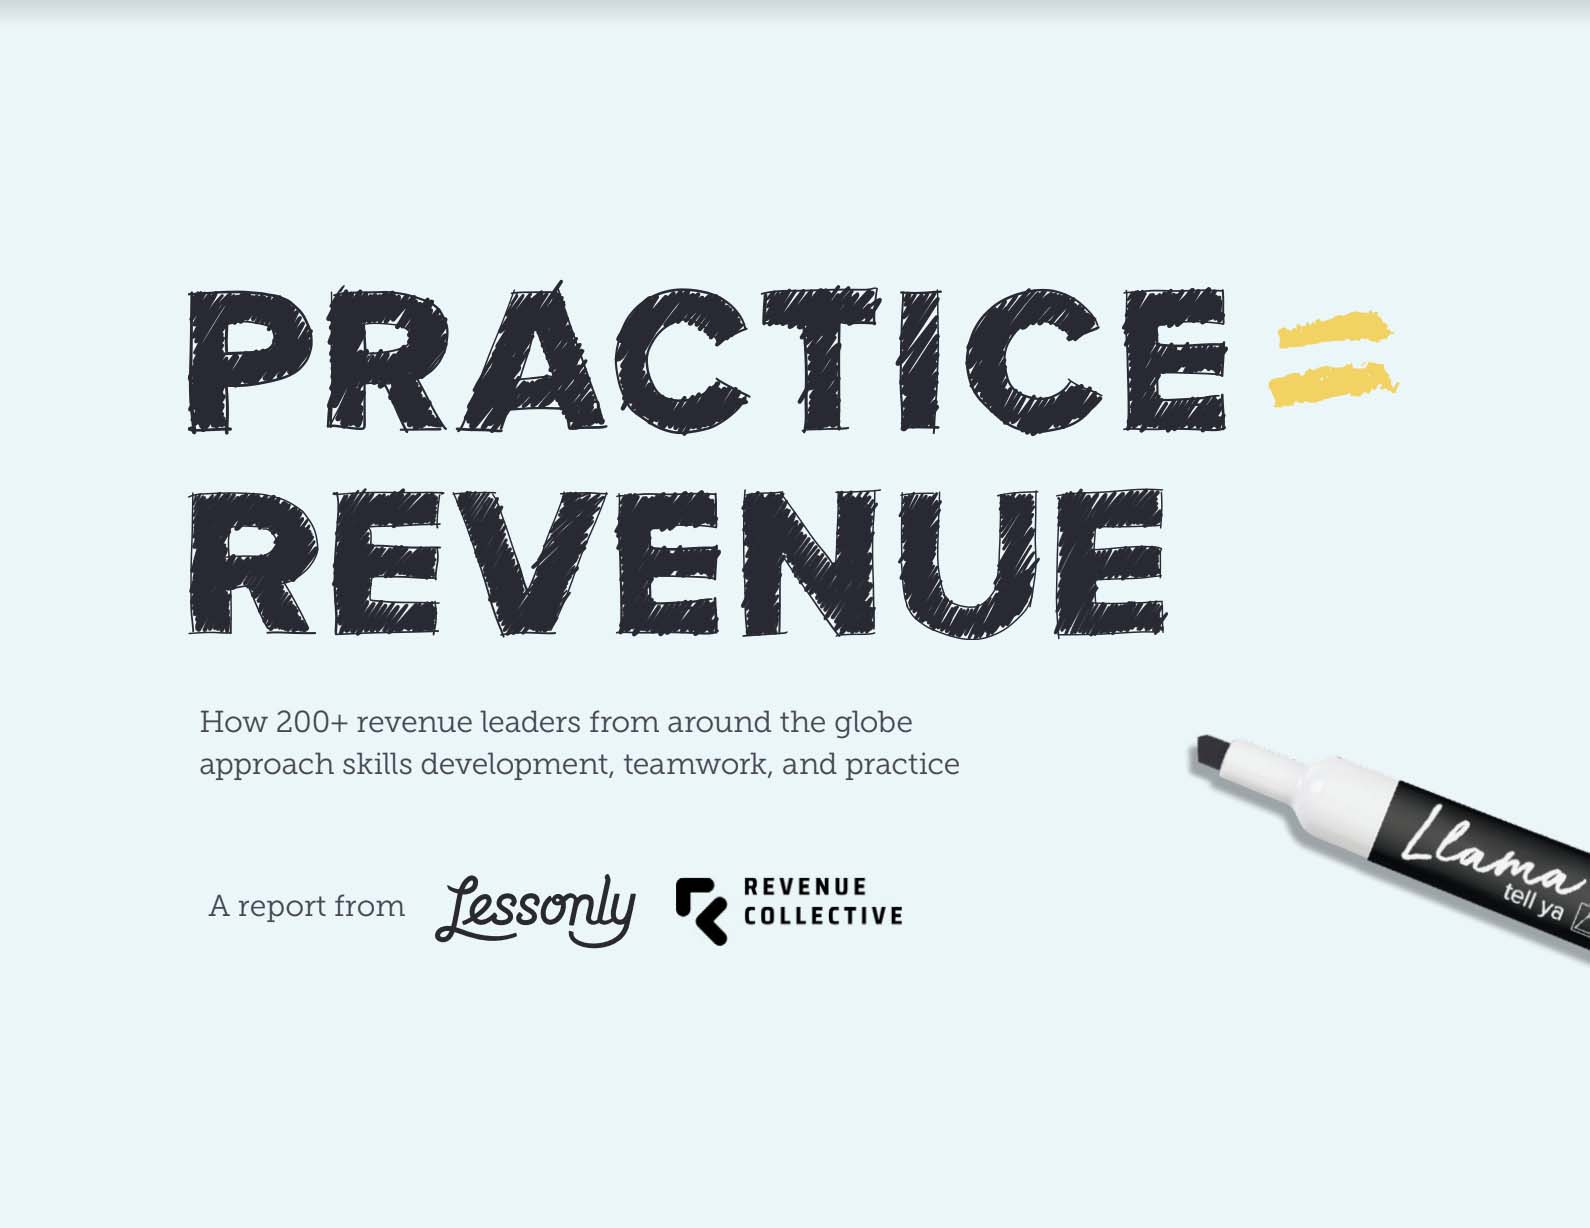 Practice = Revenue